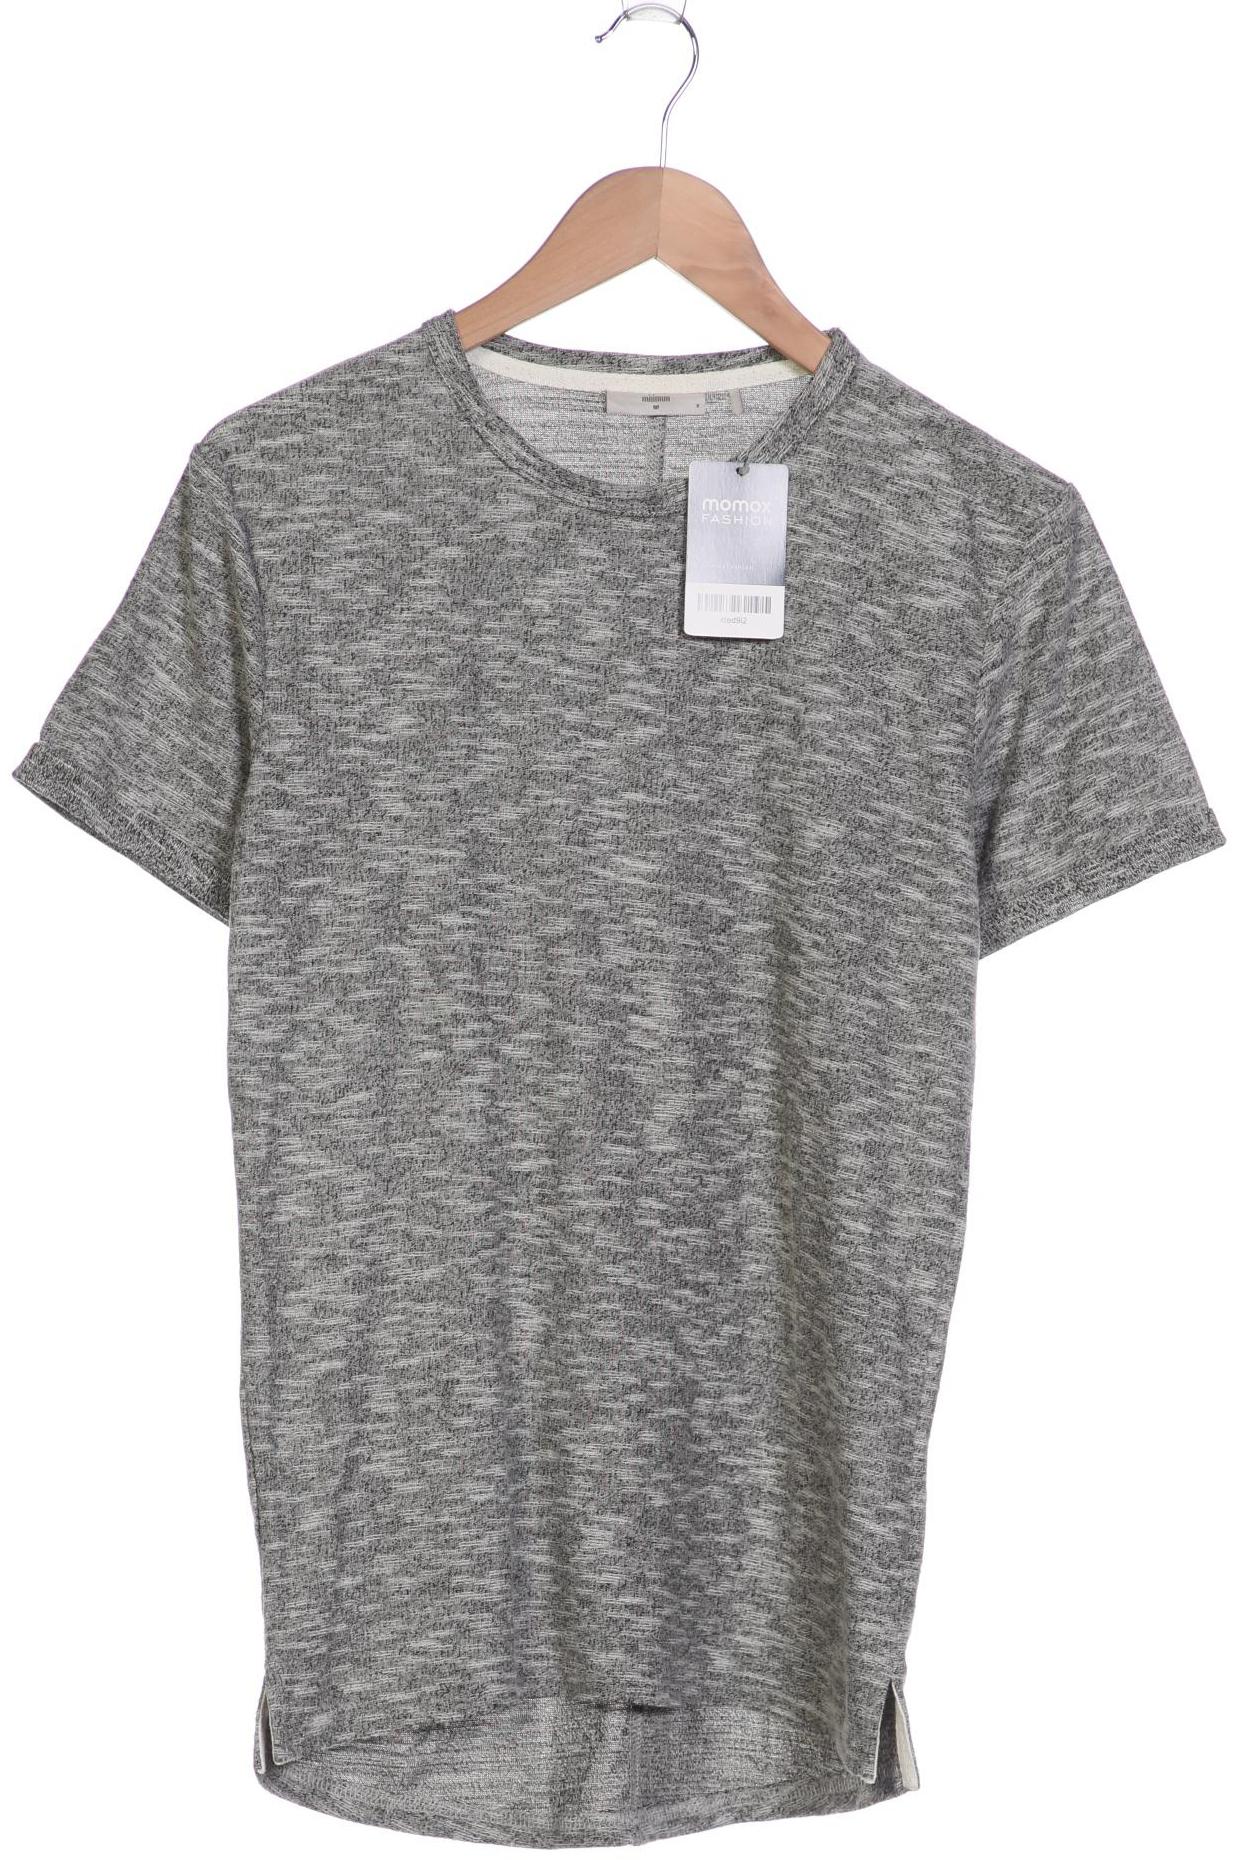 Minimum Herren T-Shirt, grau, Gr. 46 von Minimum